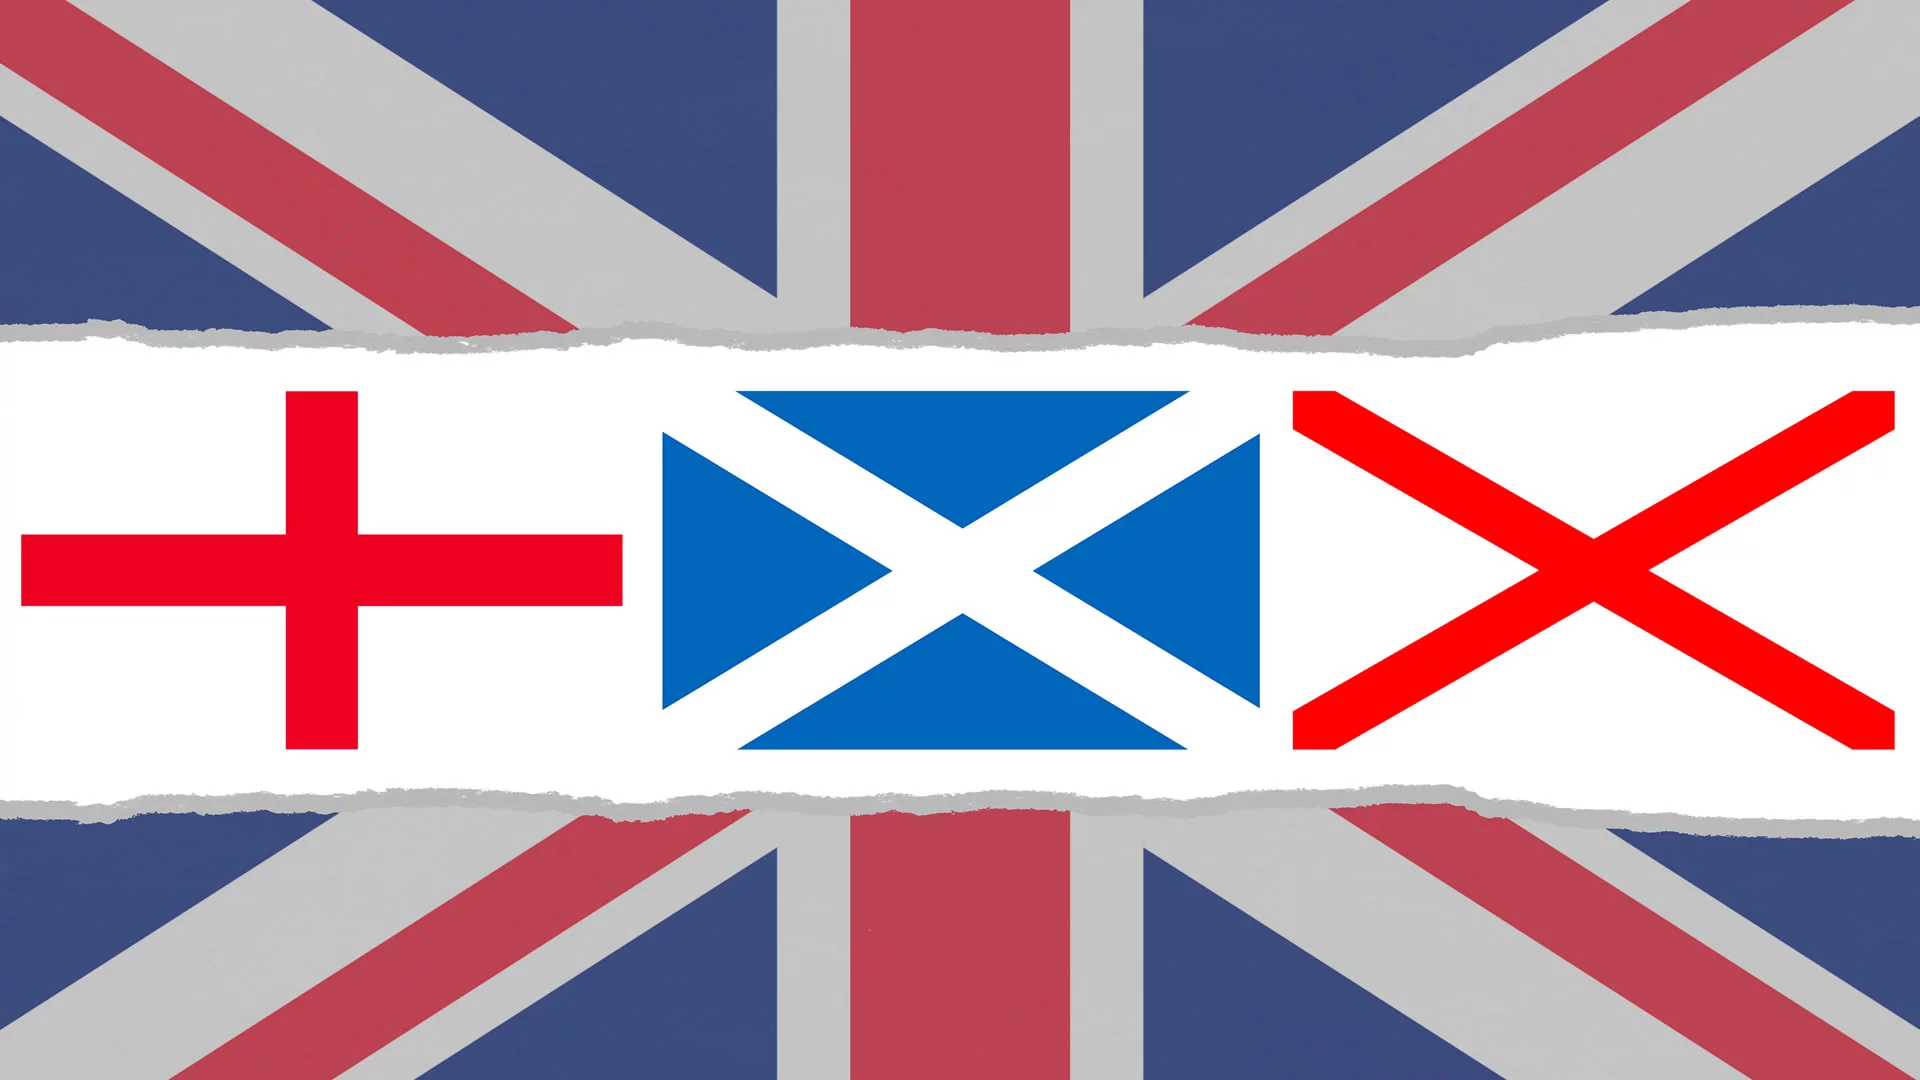 Croci che compongono la bandiera del Regno Unito